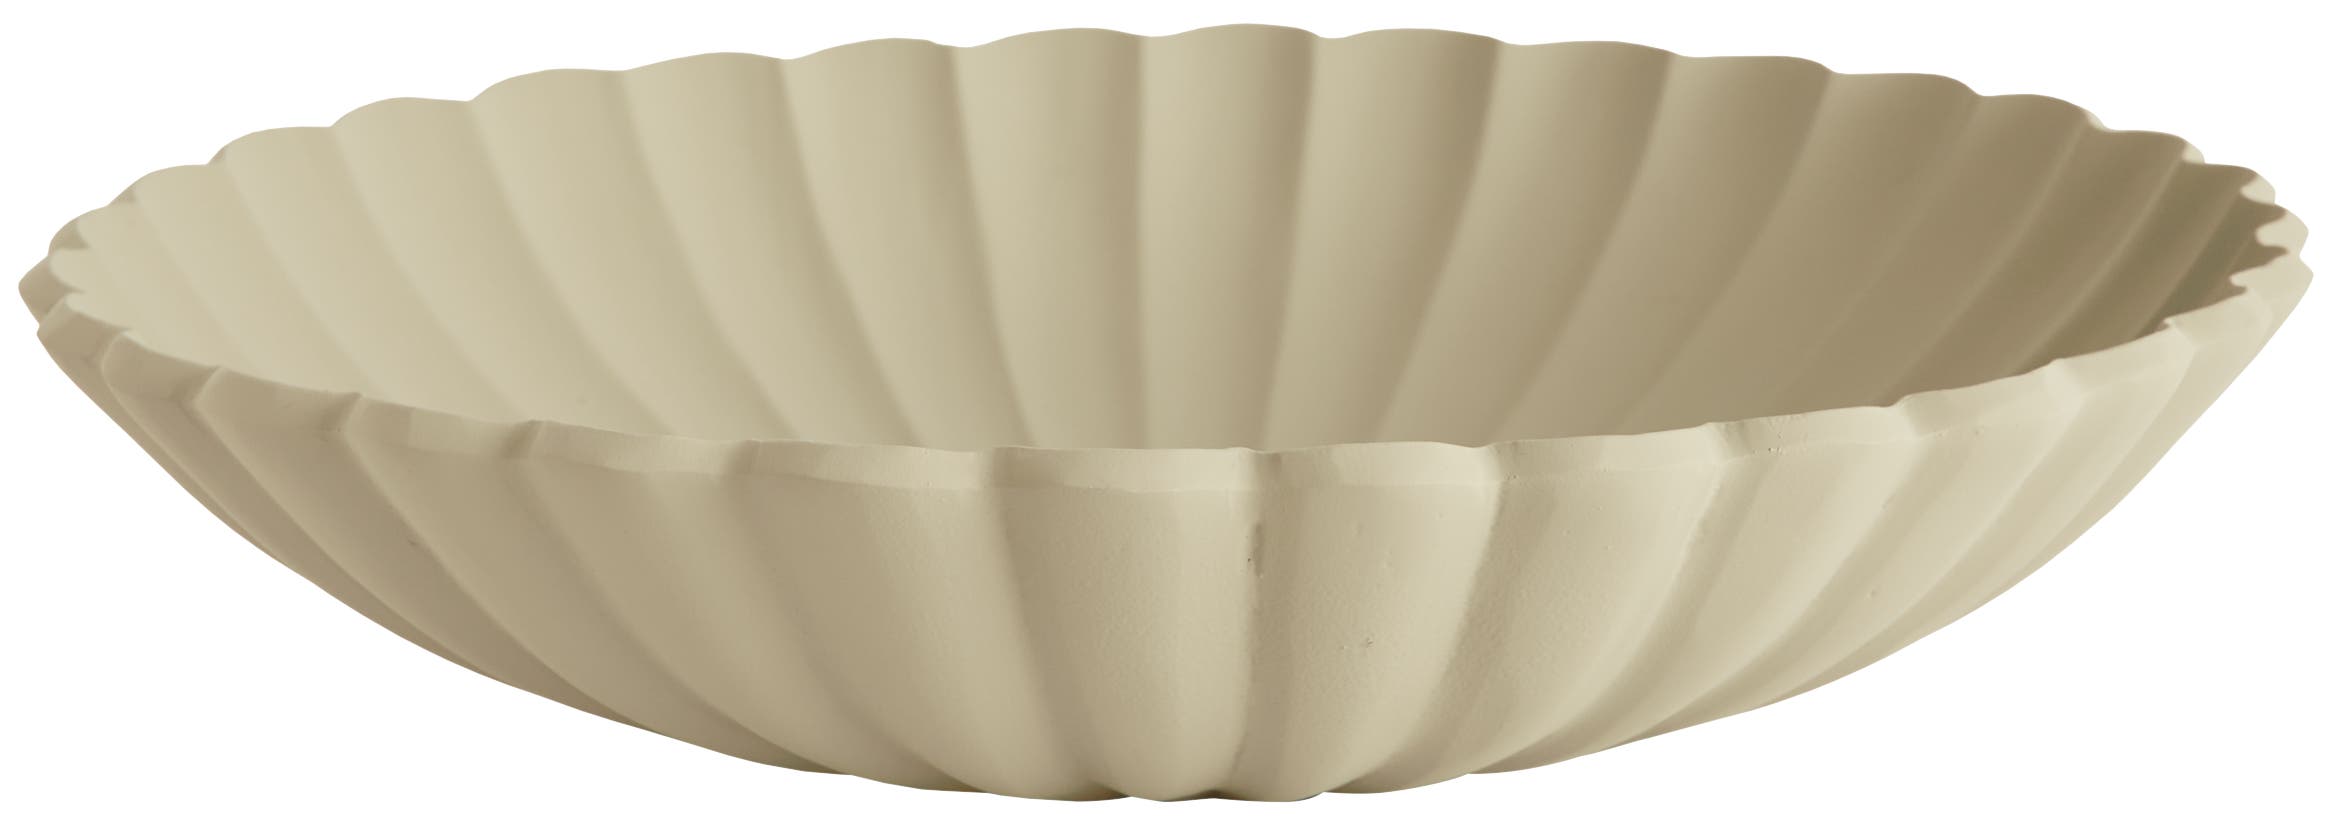 Parasol bowl